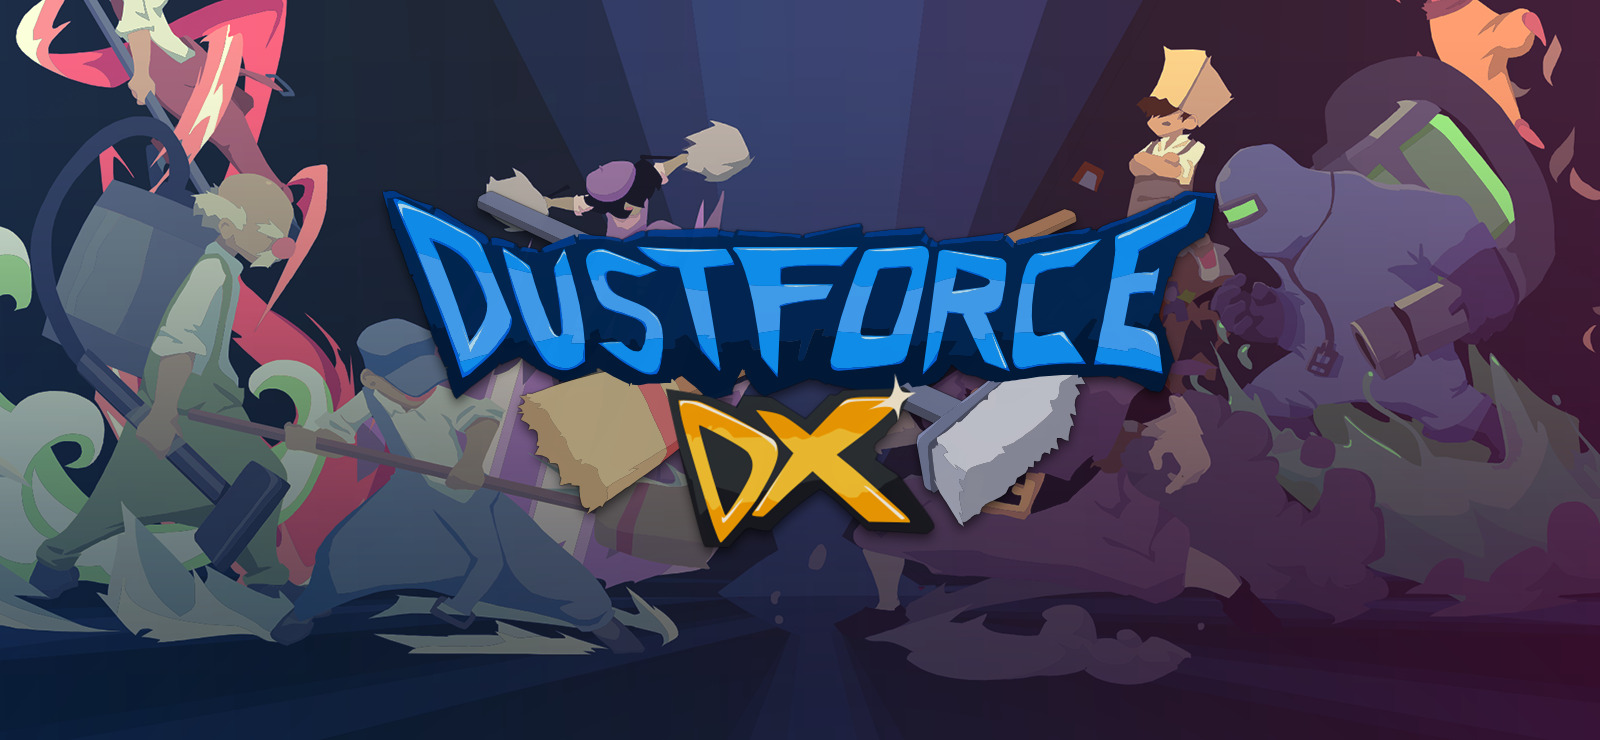 dustforce dx gog download